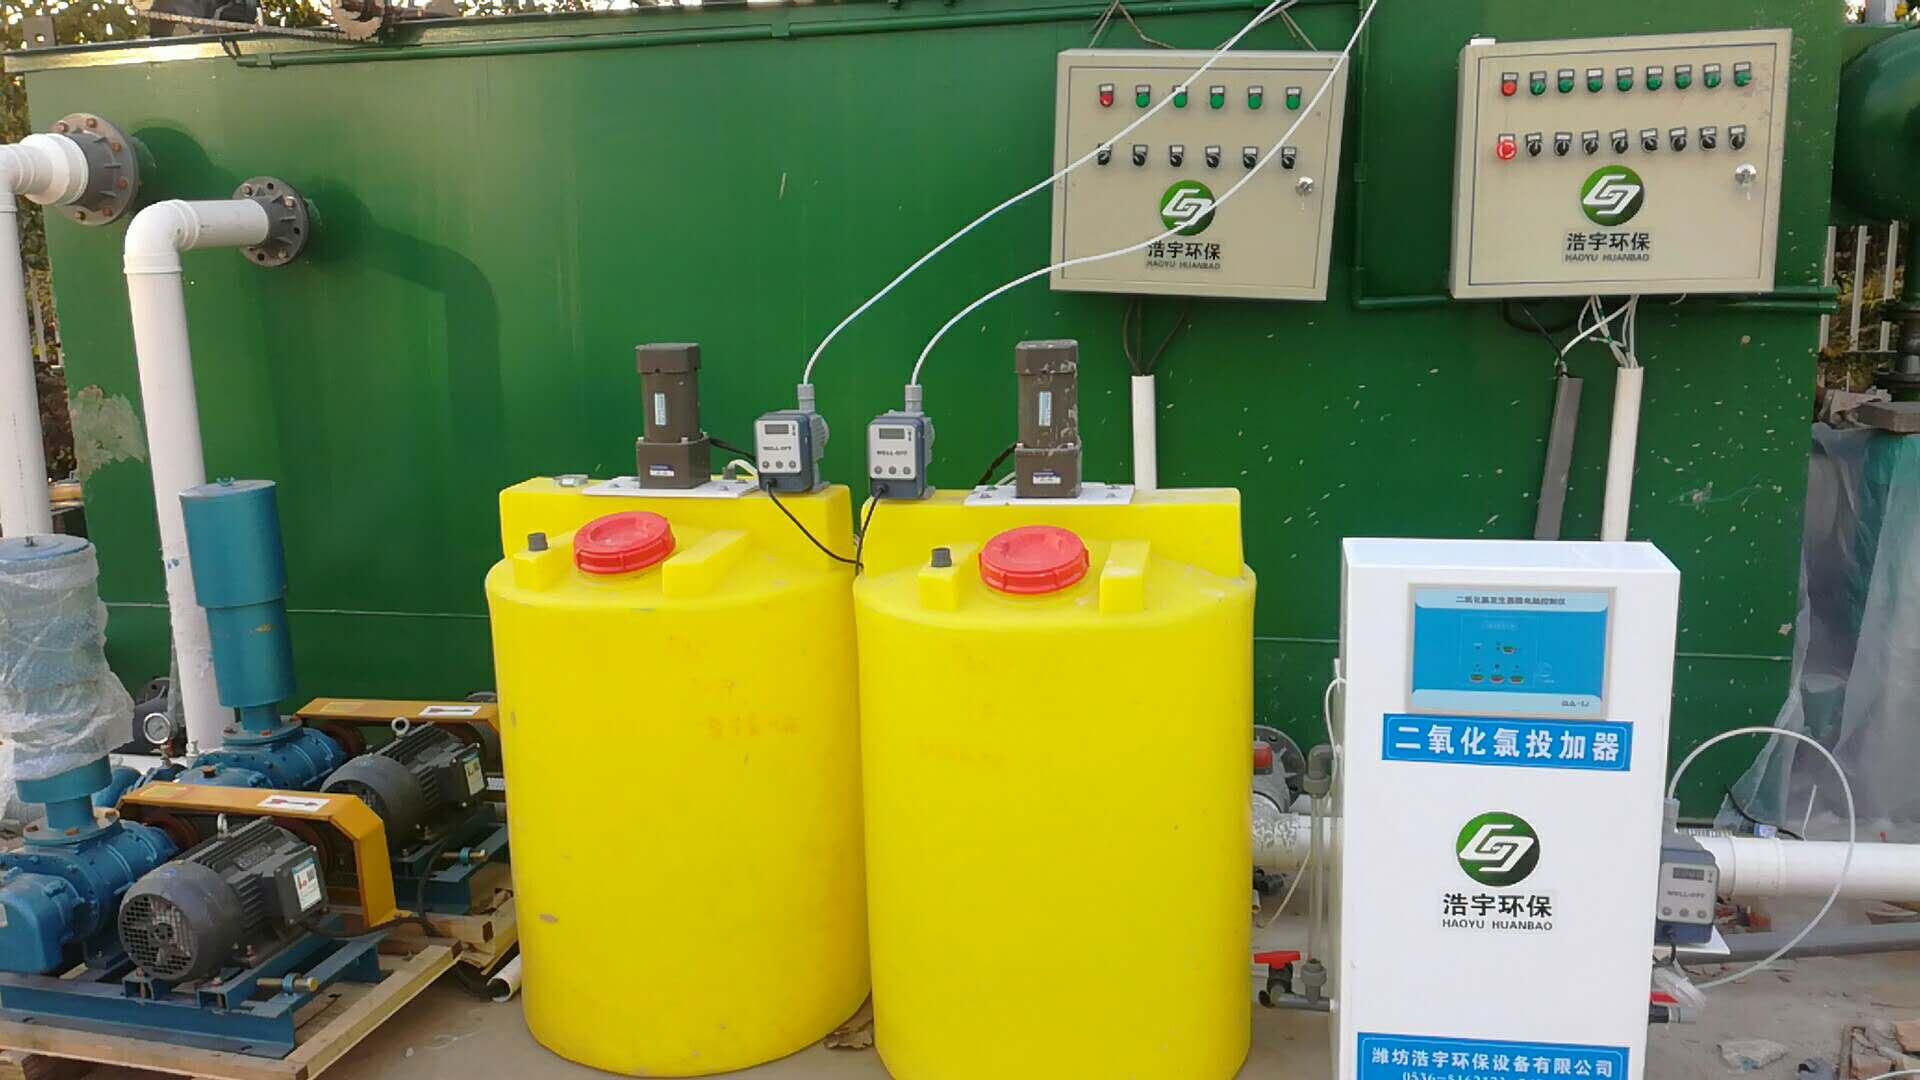 天津市洗衣房洗涤污水处理设备生产厂家